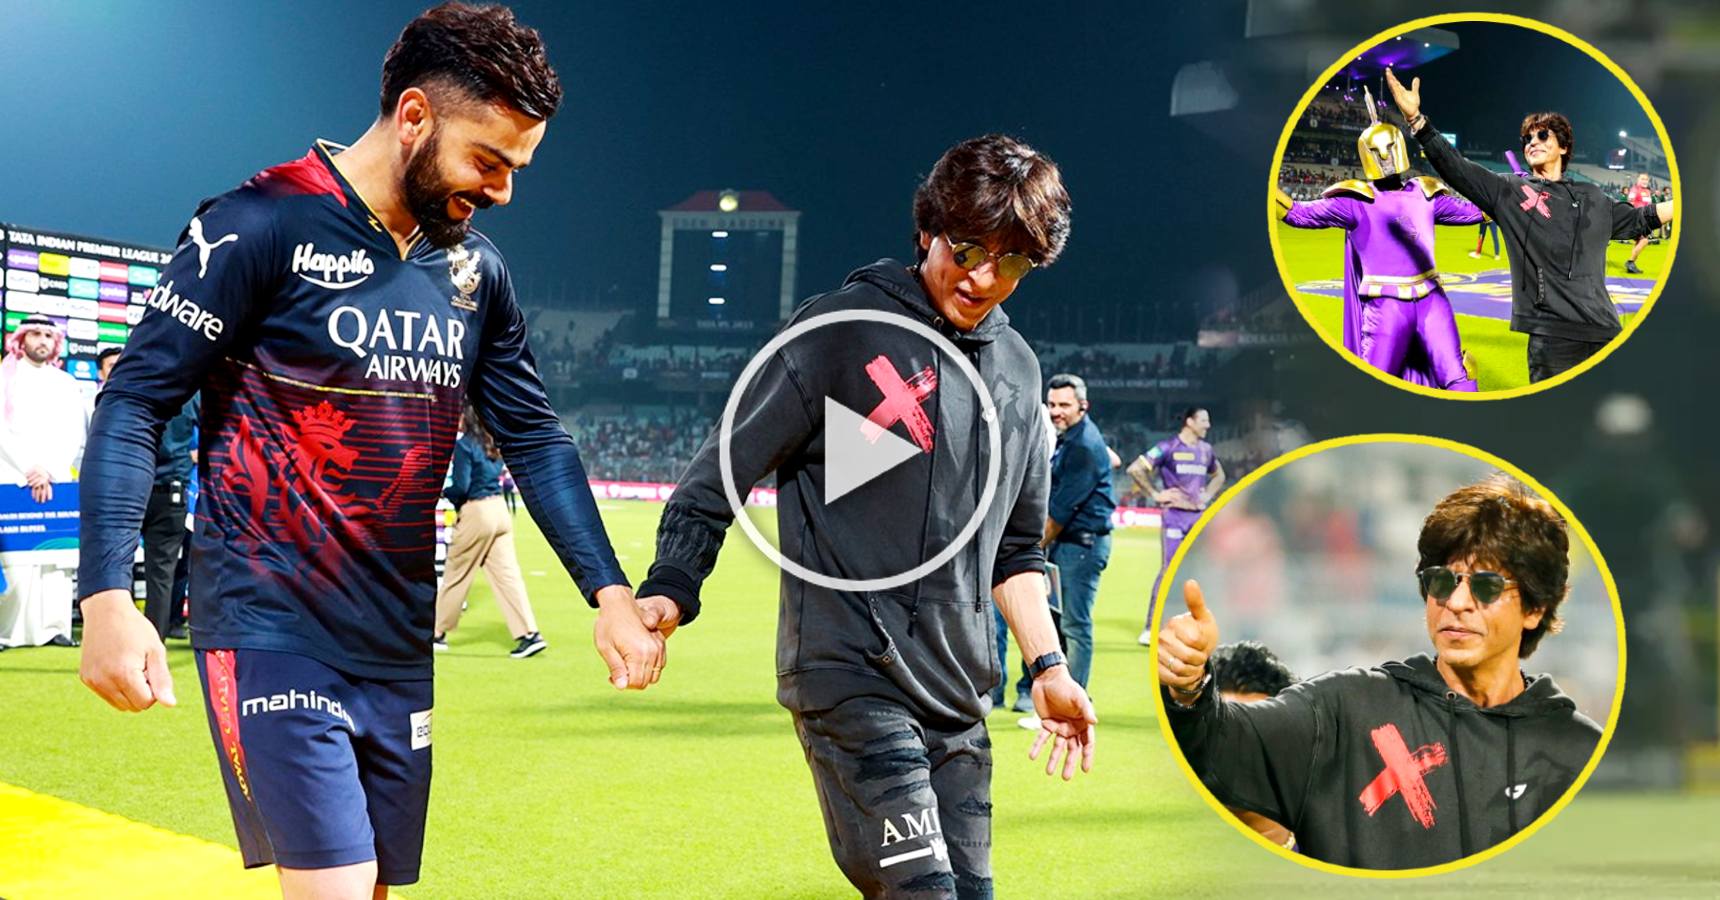 Shah Rukh Khan dances with Virat Kohli in Jhoome Jo Pathaan after KKR vs RCB match